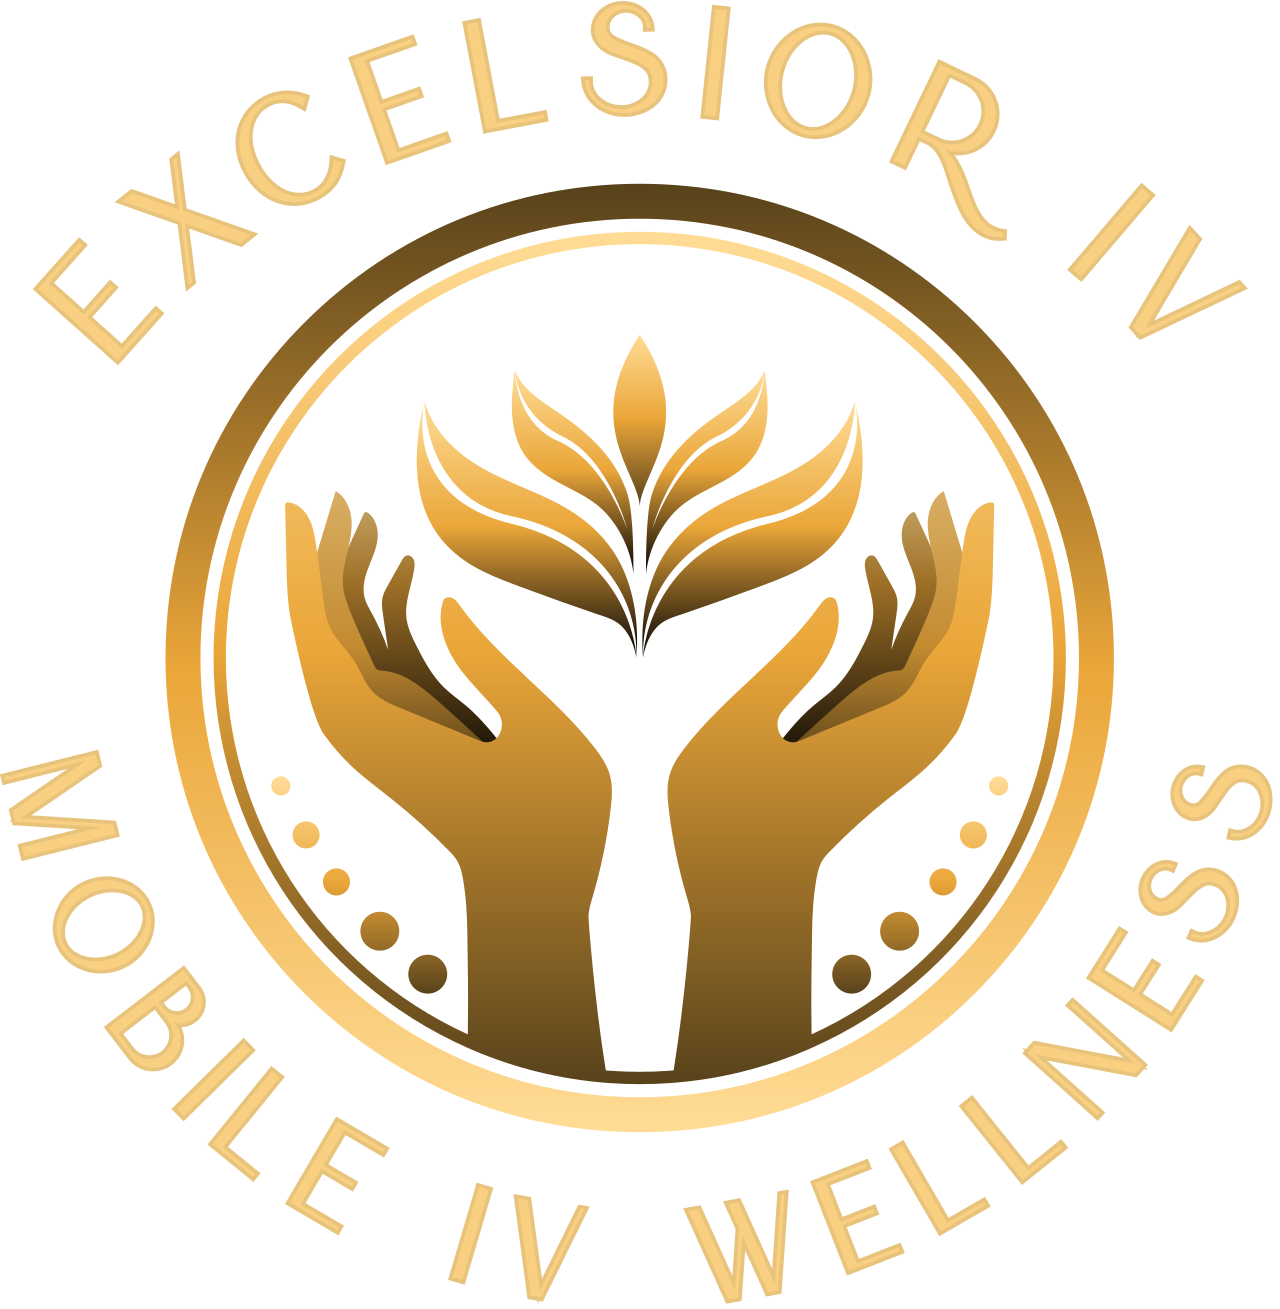 EXCELSIOR IV's logo